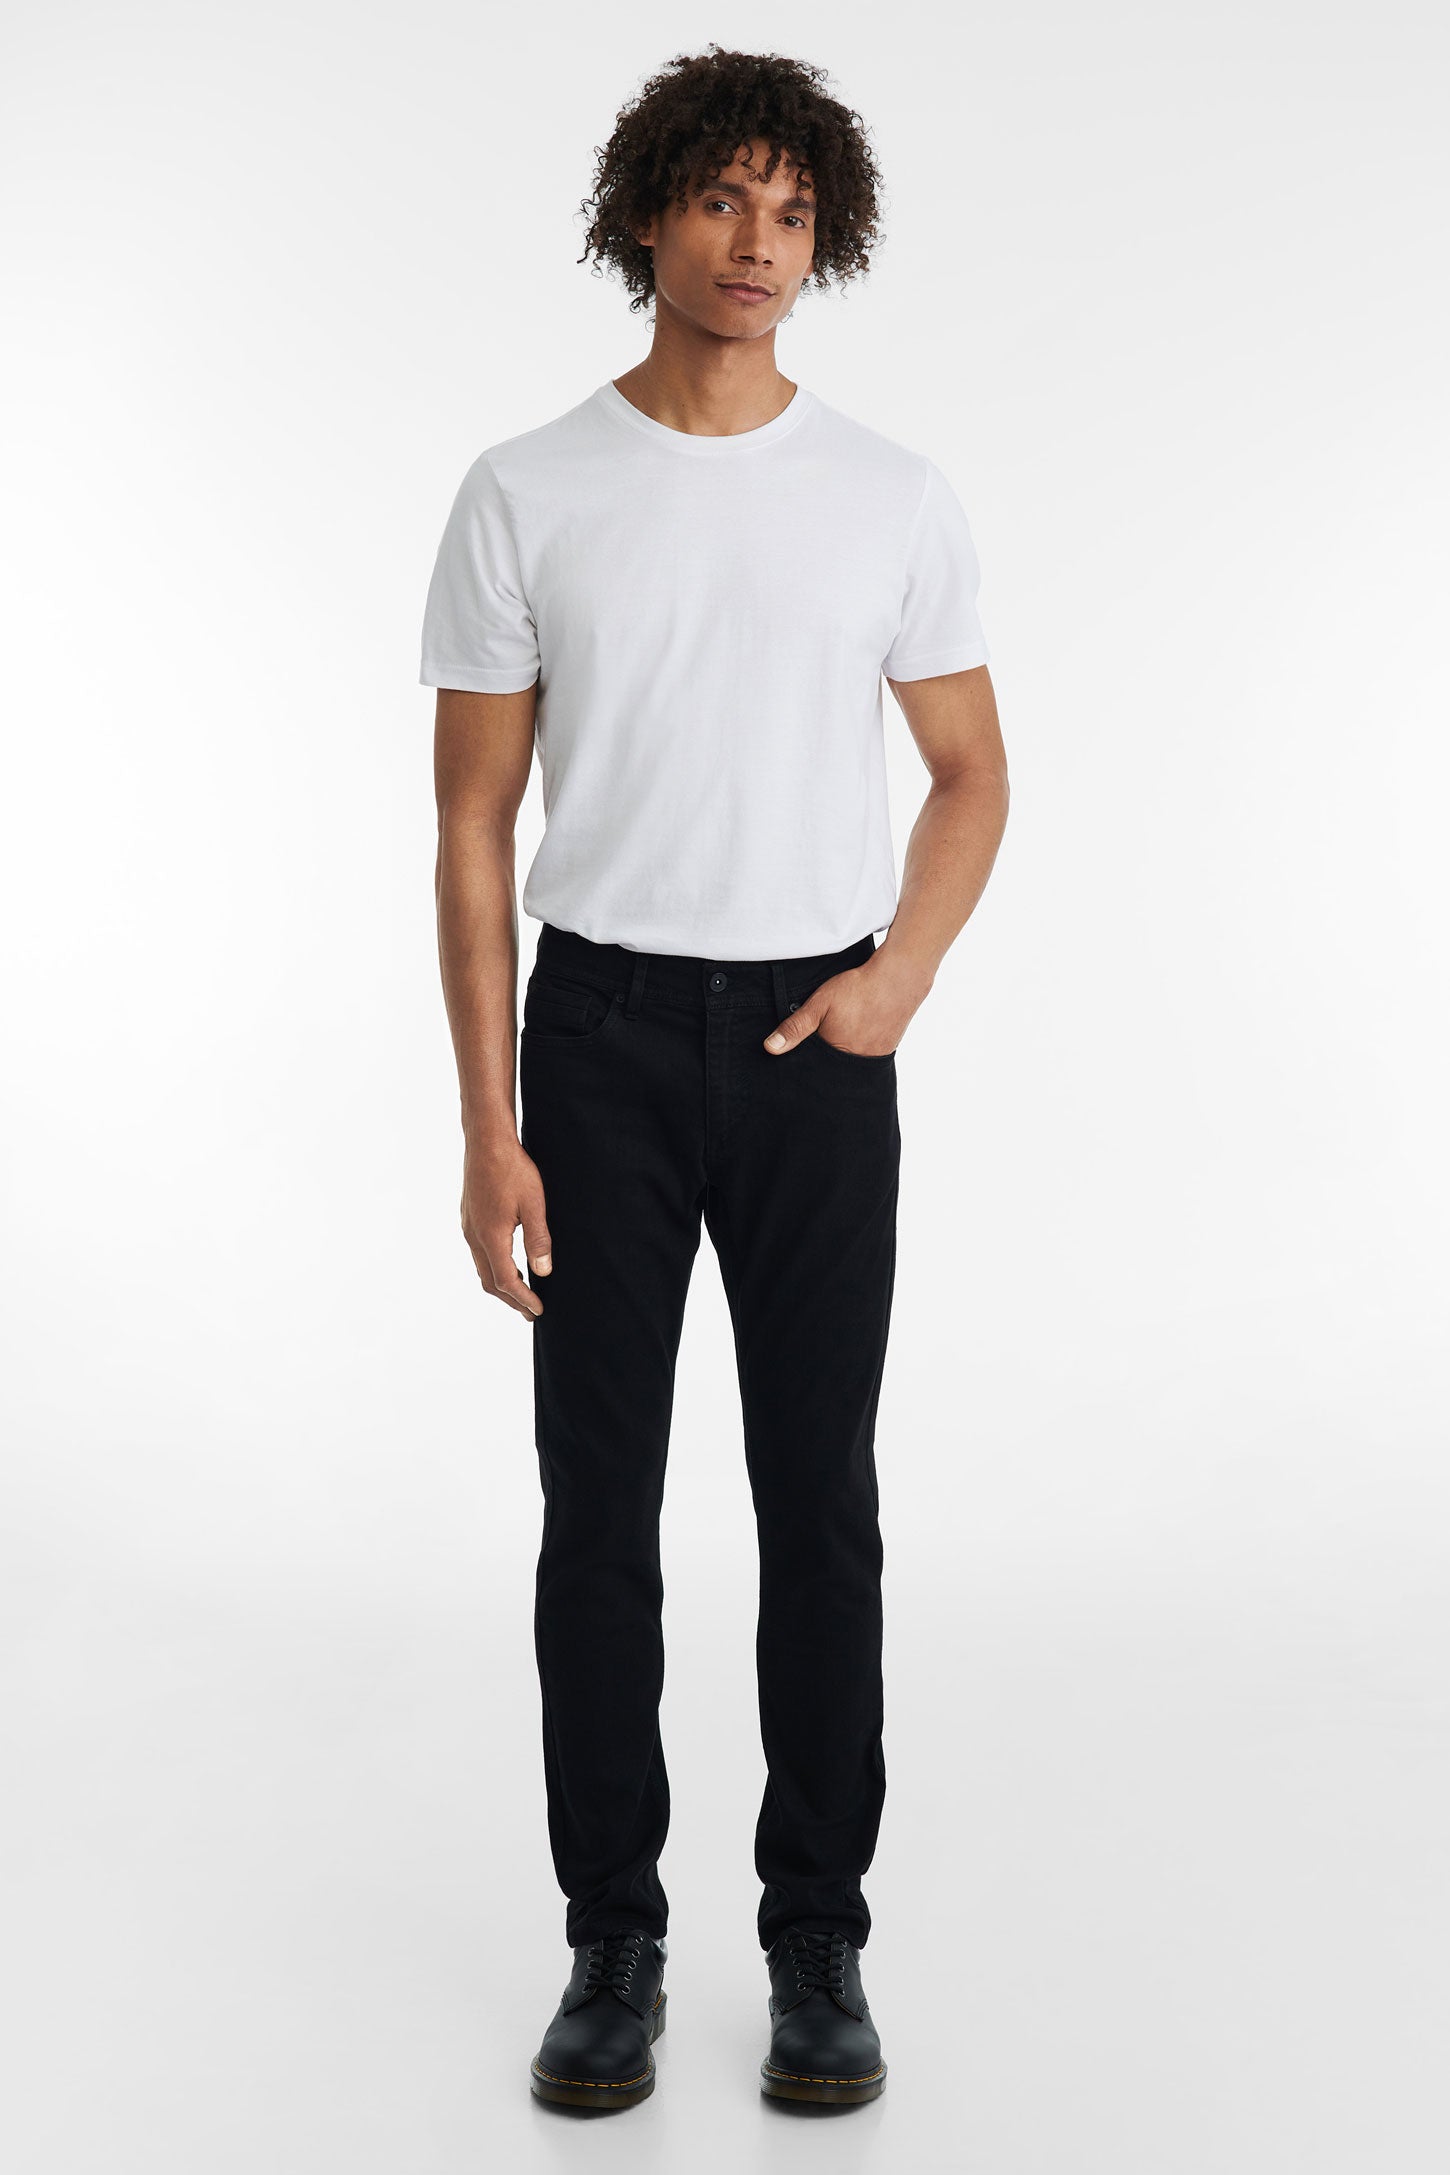 Jeans 5 poches coupe ajustée 32'' - Homme && NOIR